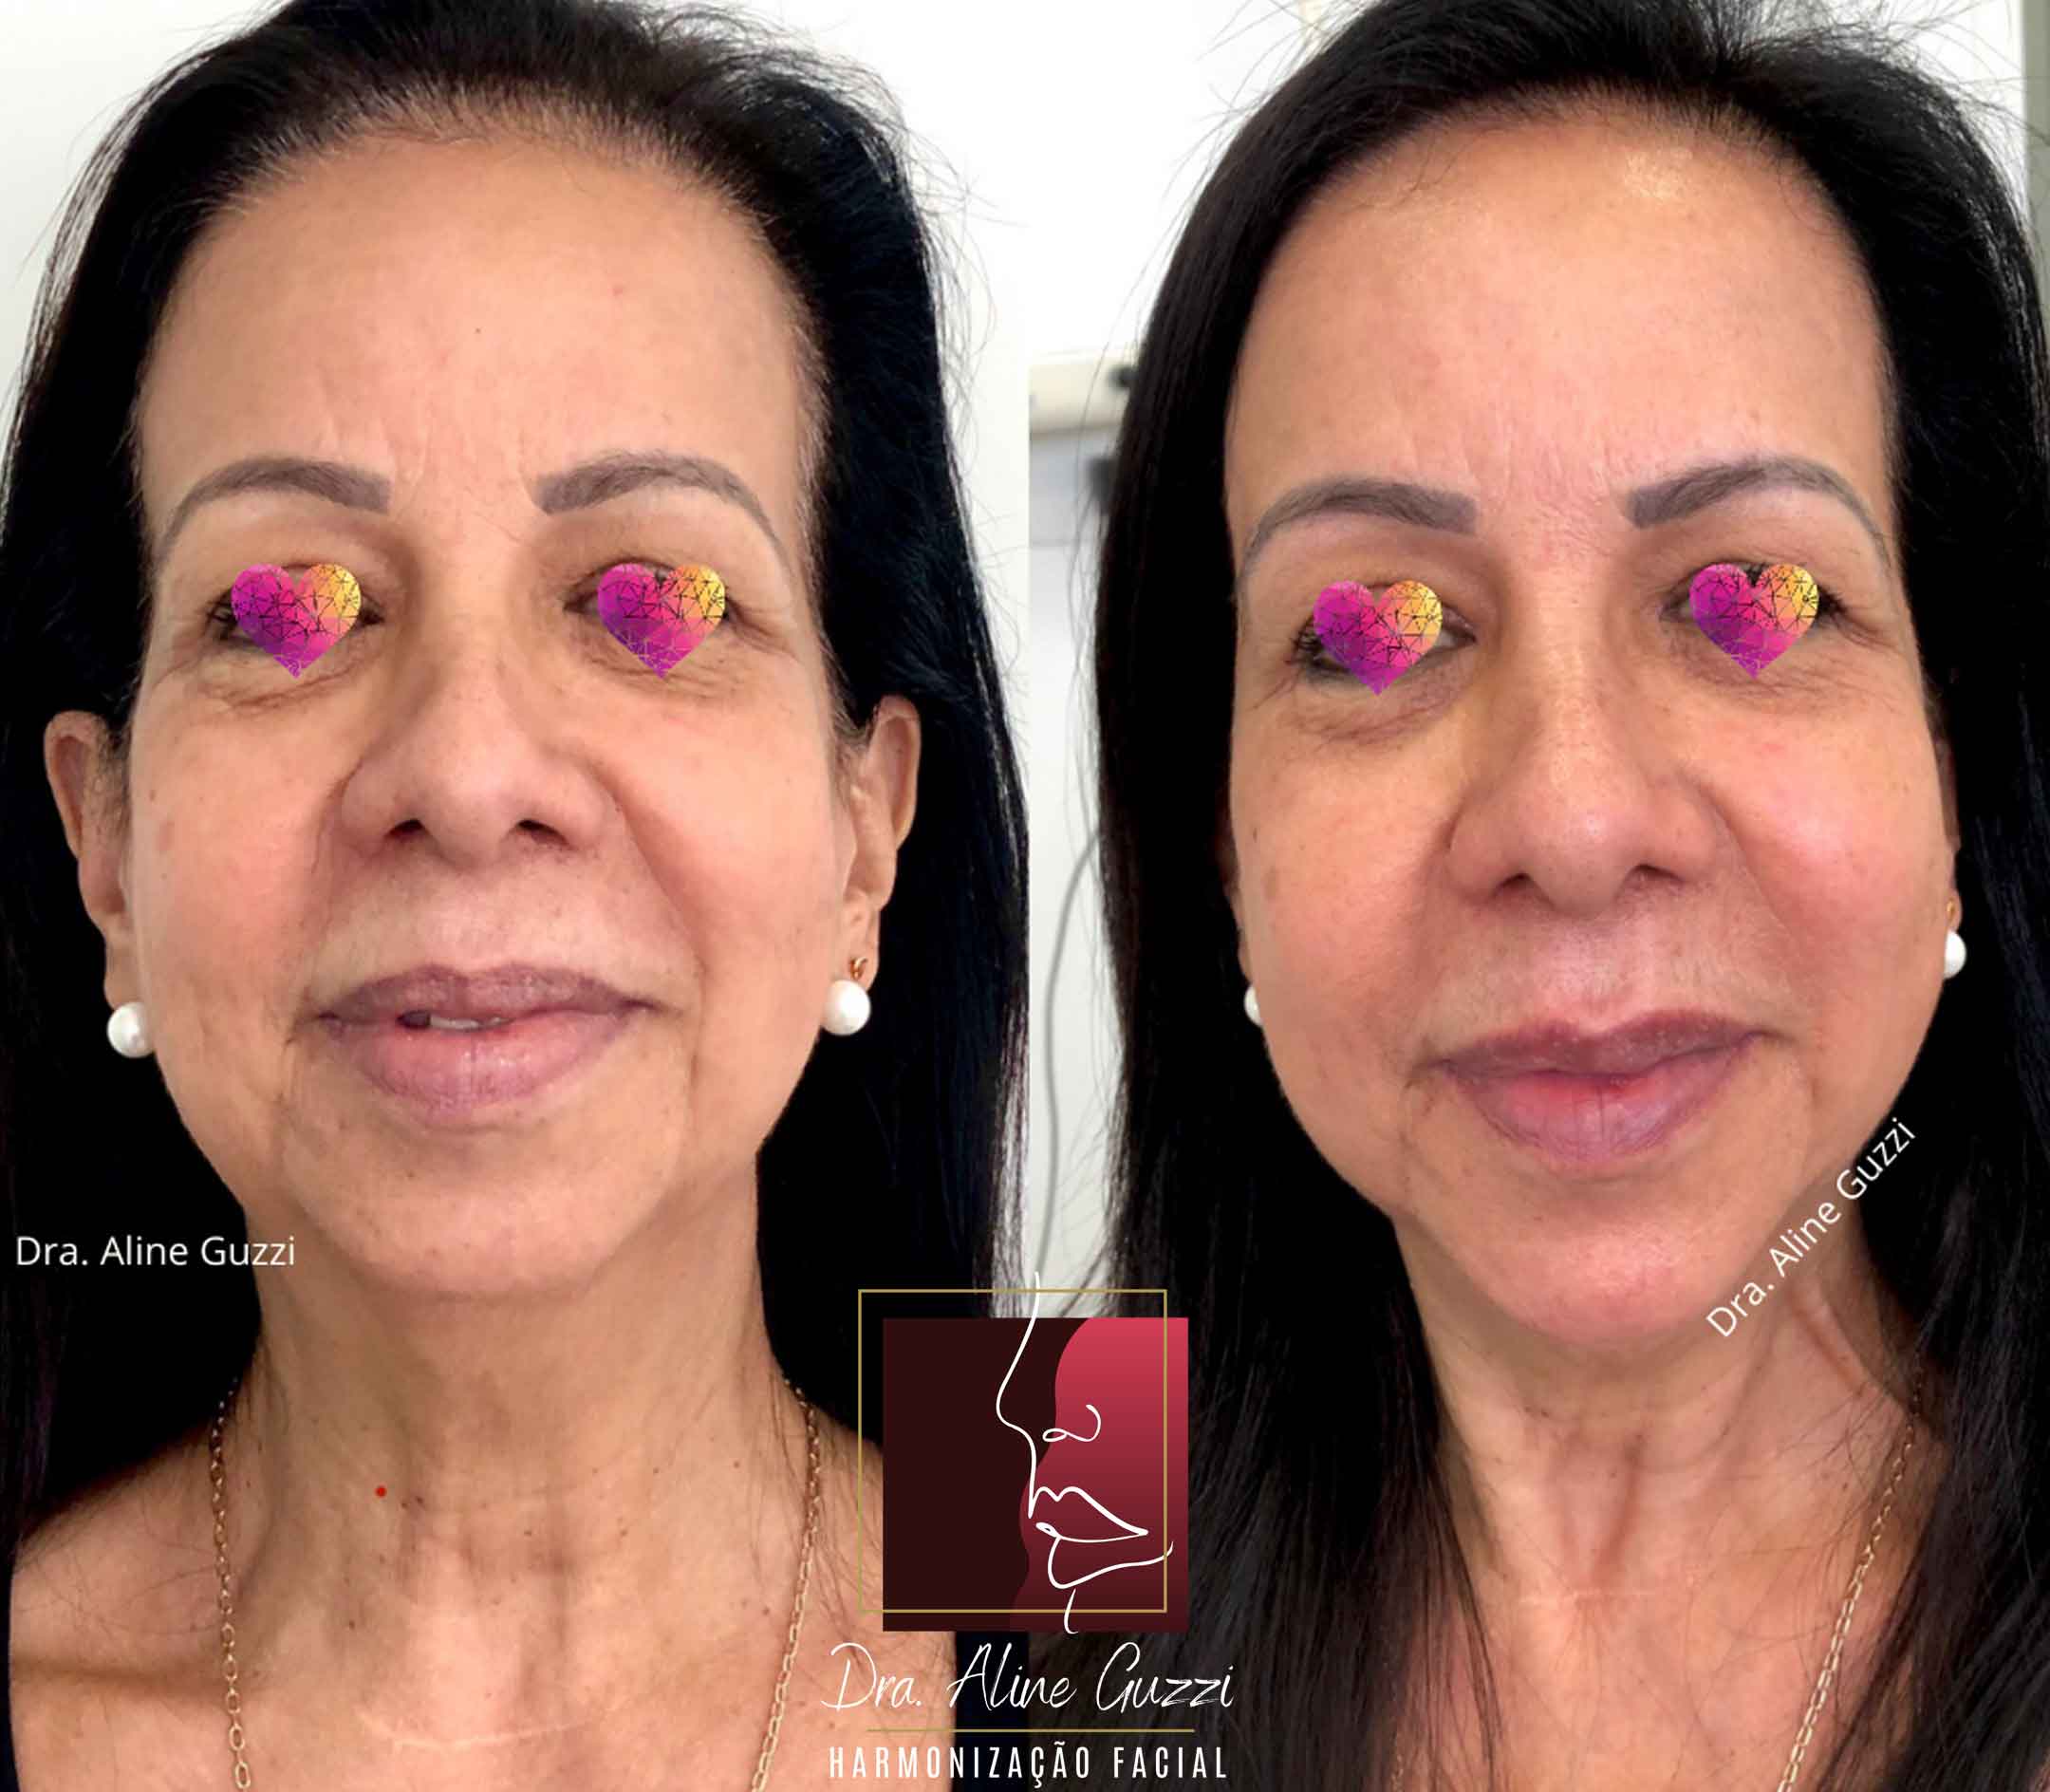 Harmonização Facial - Dra. Aline Guzzi: Caso Clínico de Bioestimulador